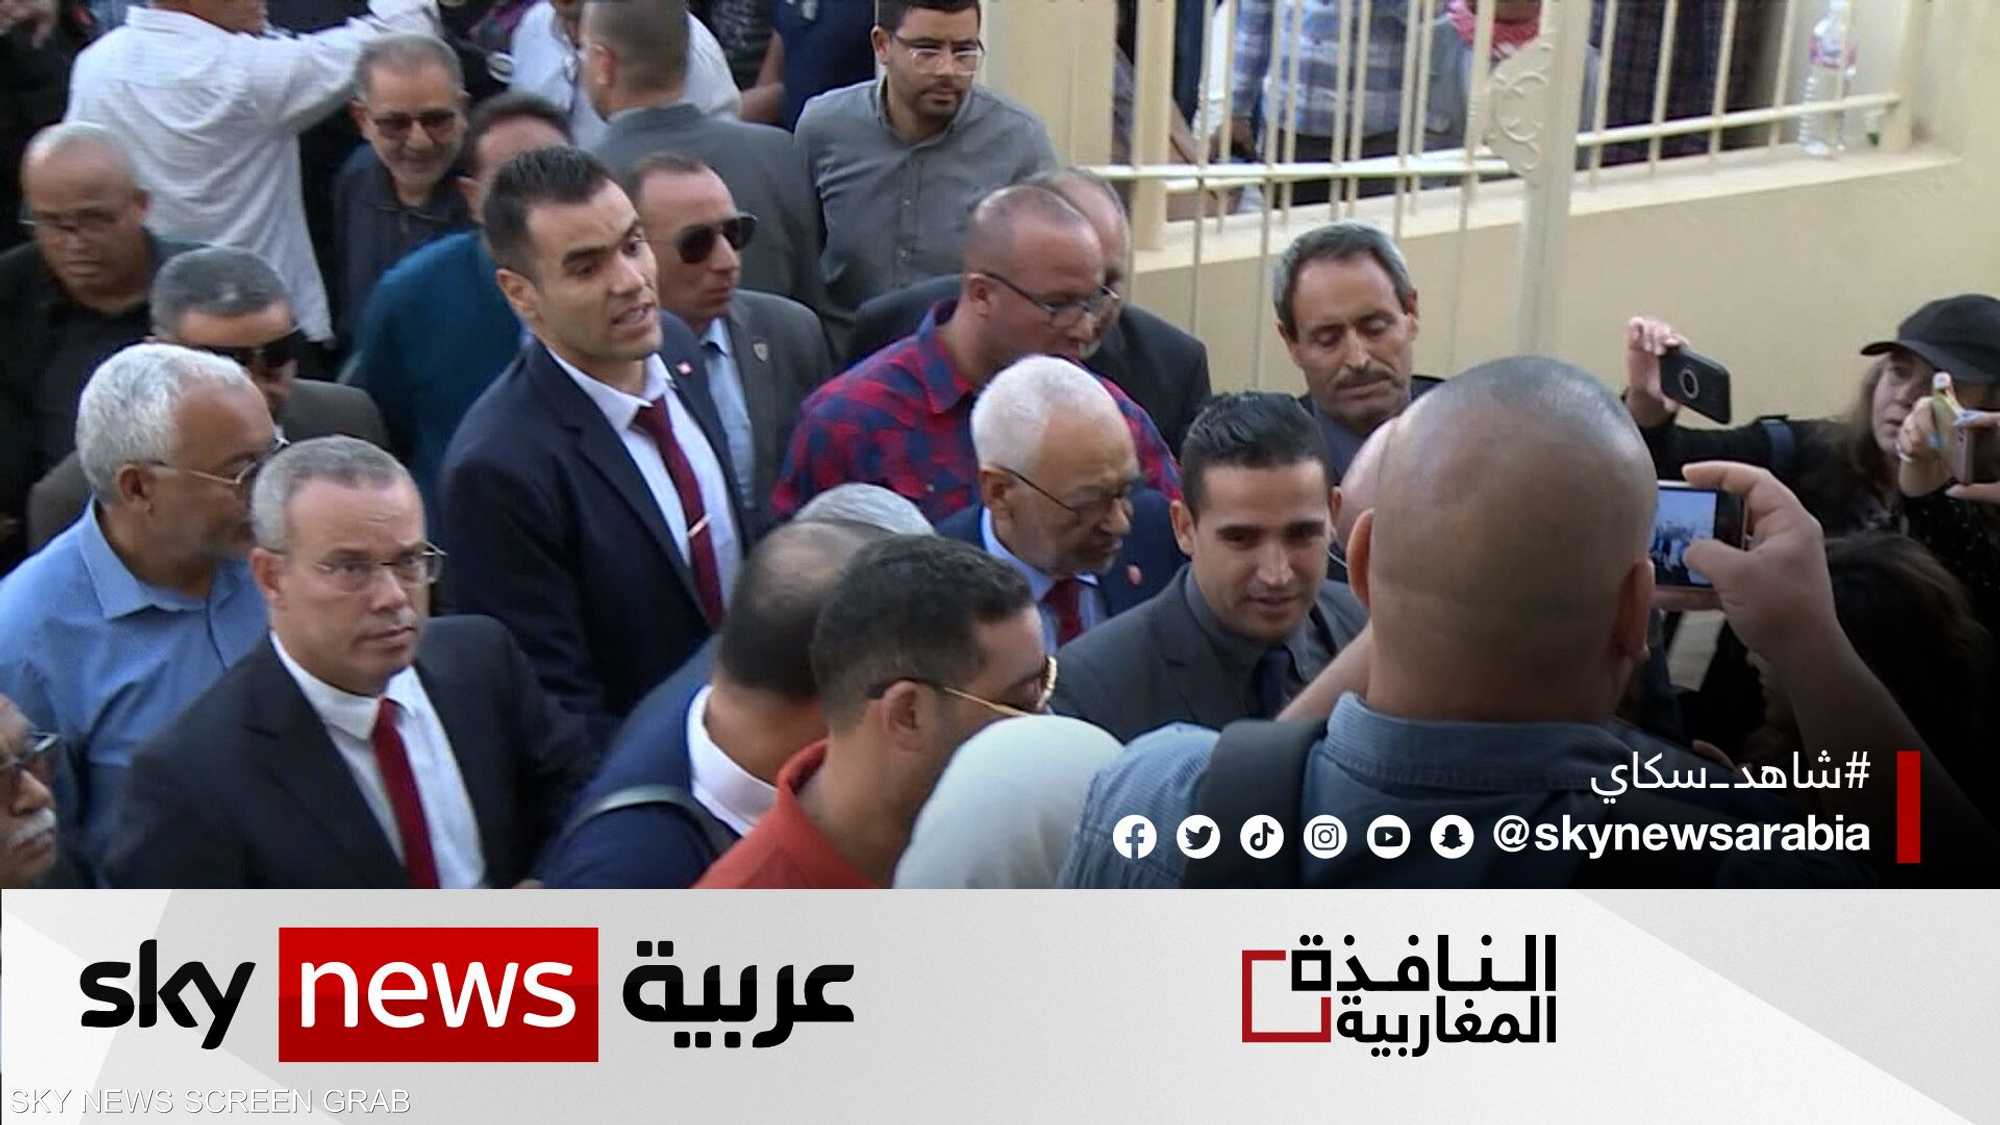 قرار قضائي تونسي بجلب نجل الغنوشي إلى البلاد بتهم التآمر